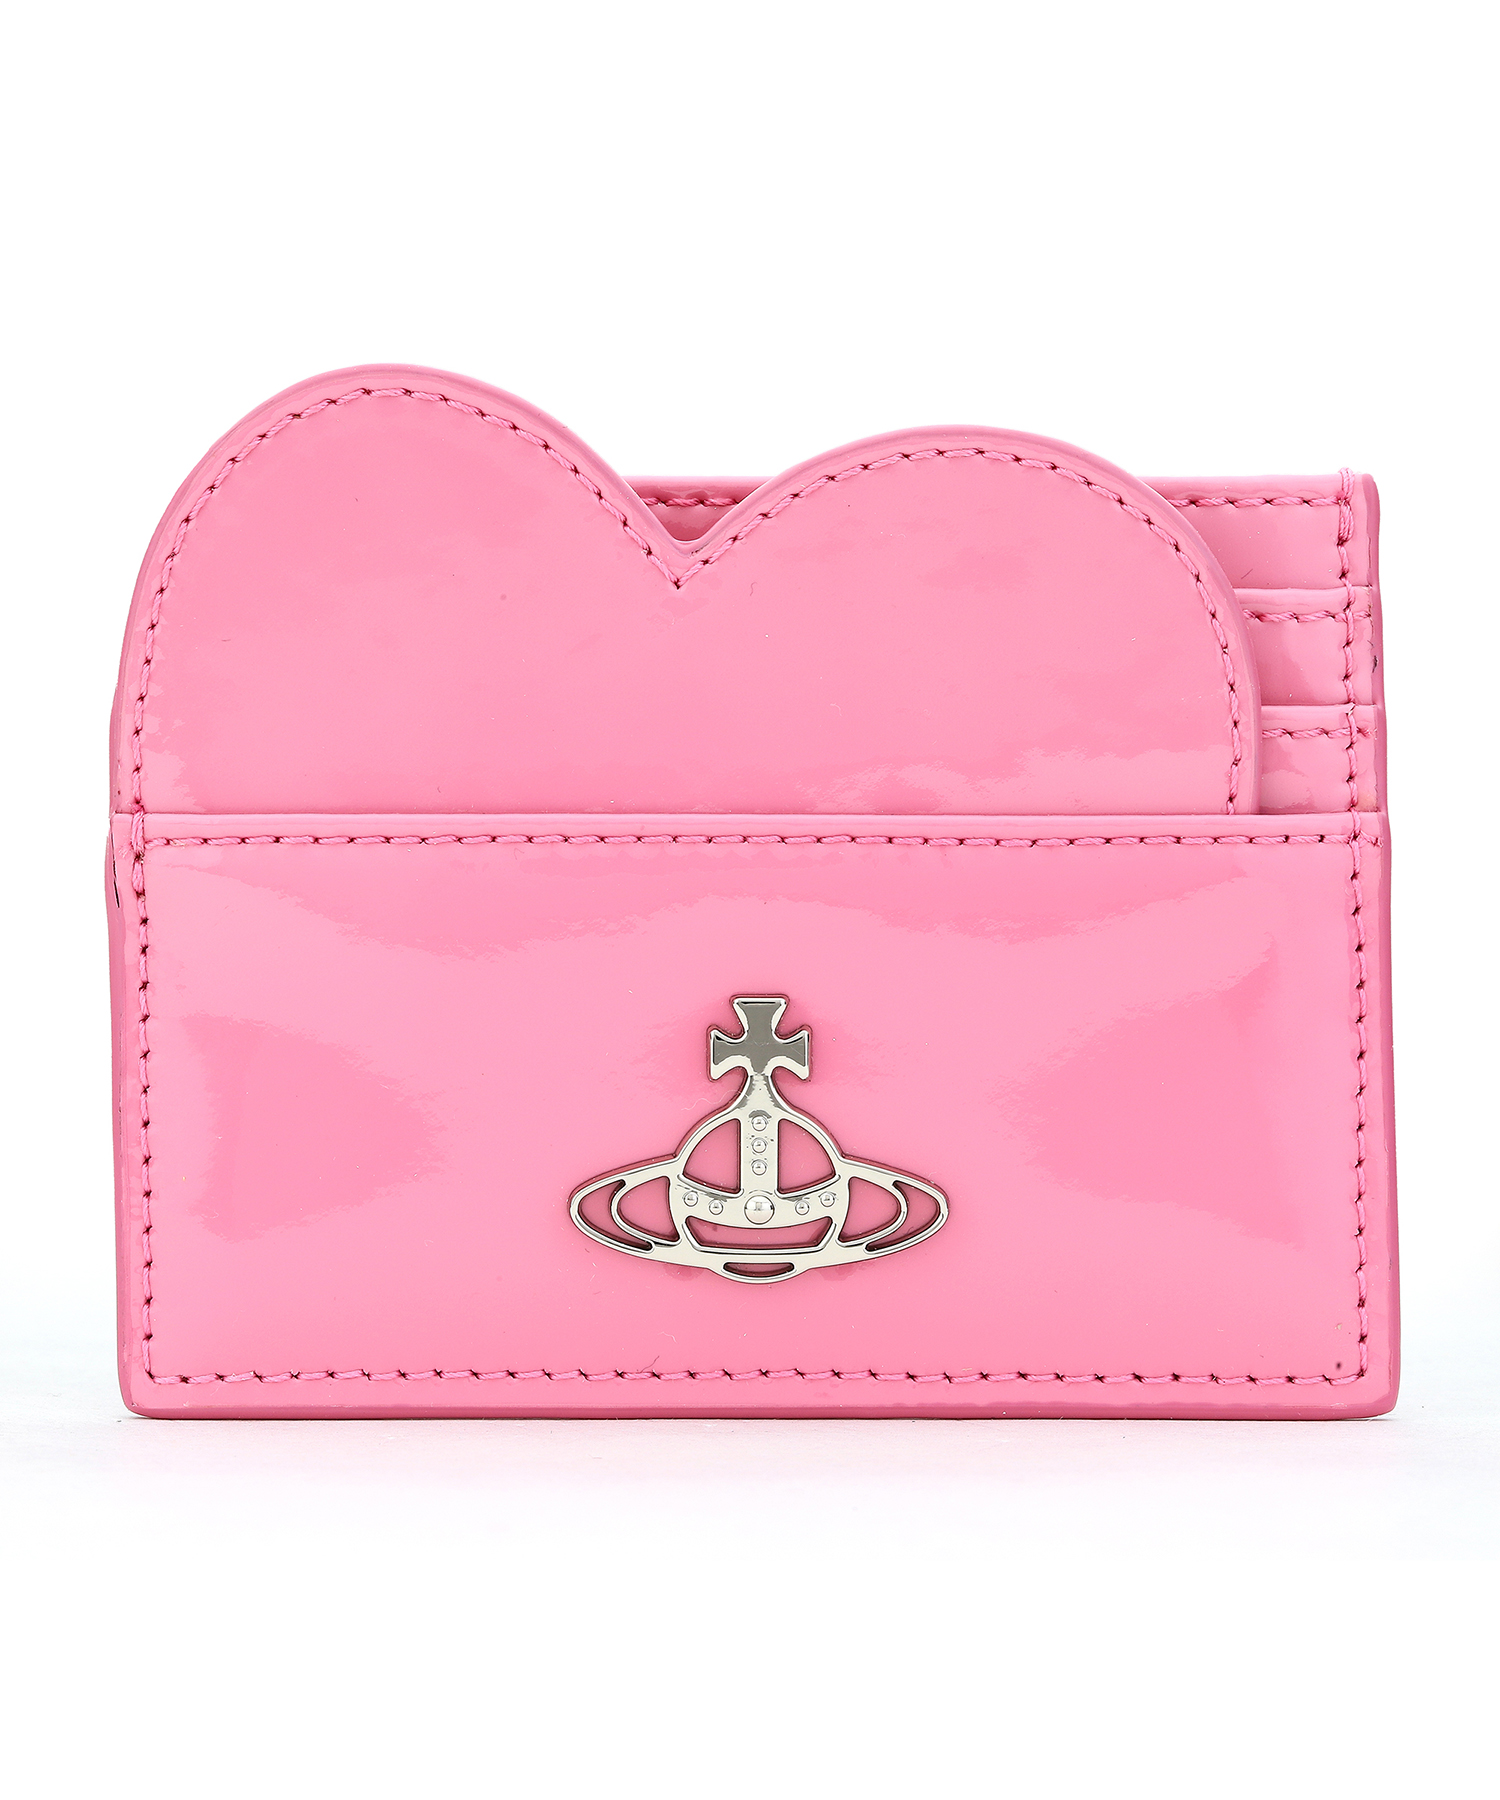 ヴィヴィアン・ウエストウッド(Vivienne Westwood) ピンク 財布 | 通販